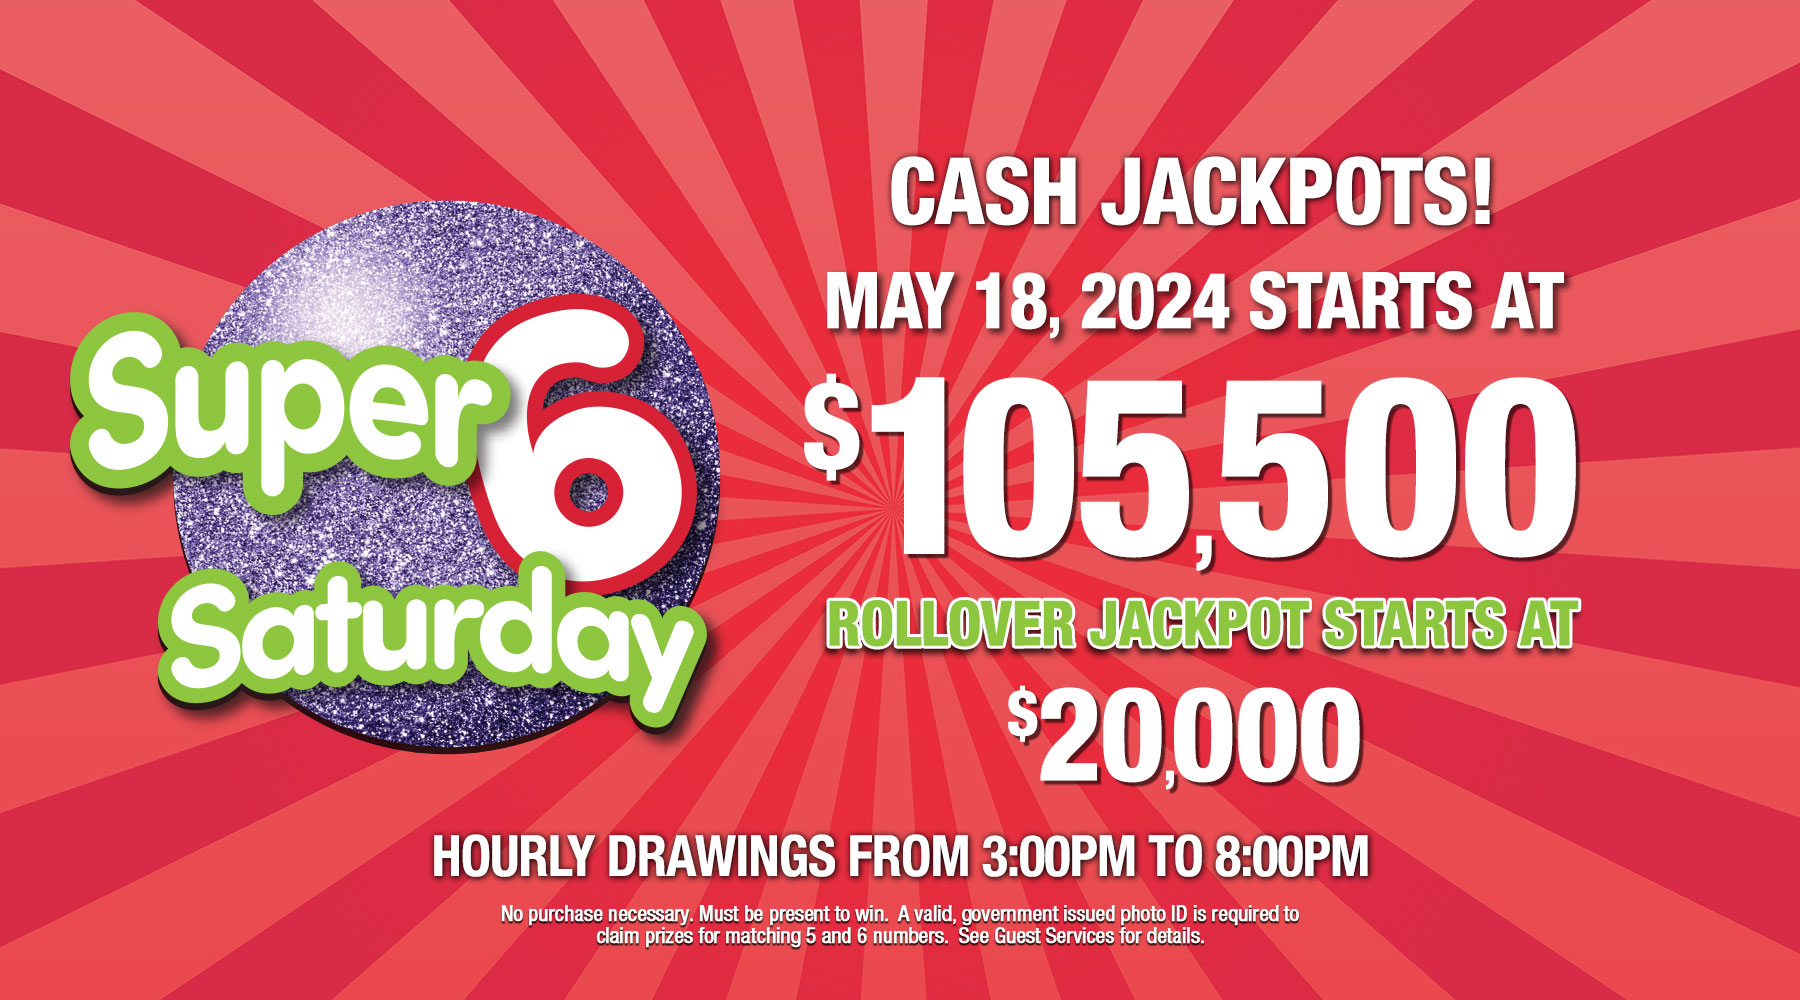 Super 6 Saturday CASH jackpot starts at $105,500 on Saturday May 18